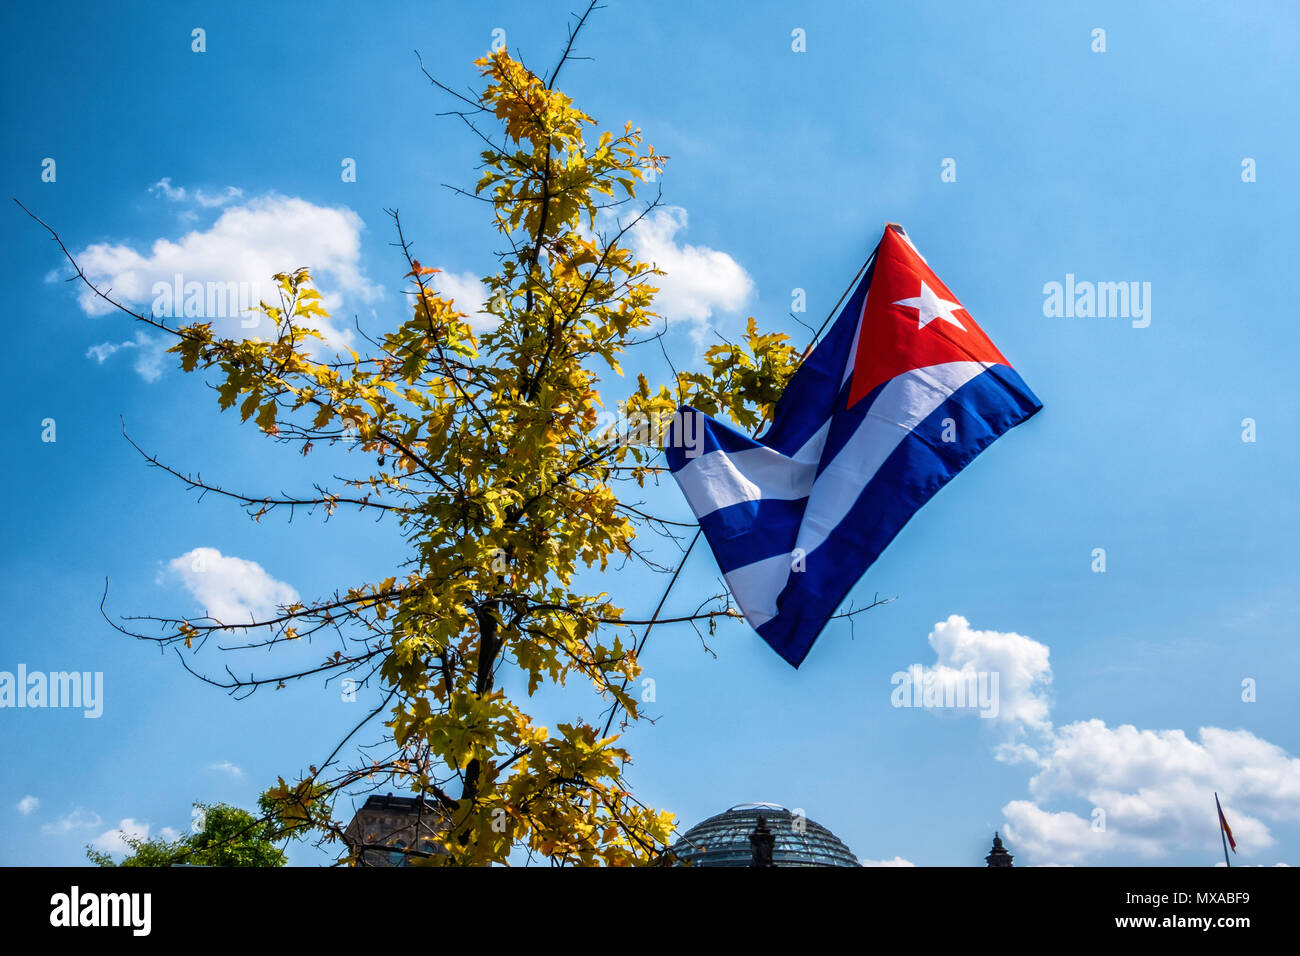 Berlin Mitte Kubanische Flagge Im Baum Vor Reichstag Regierungsgebaude Flagge Kuba 5 Blau Weisse Horizontale Streifen Und Einen Weissen Stern In Rot Tria Stockfotografie Alamy